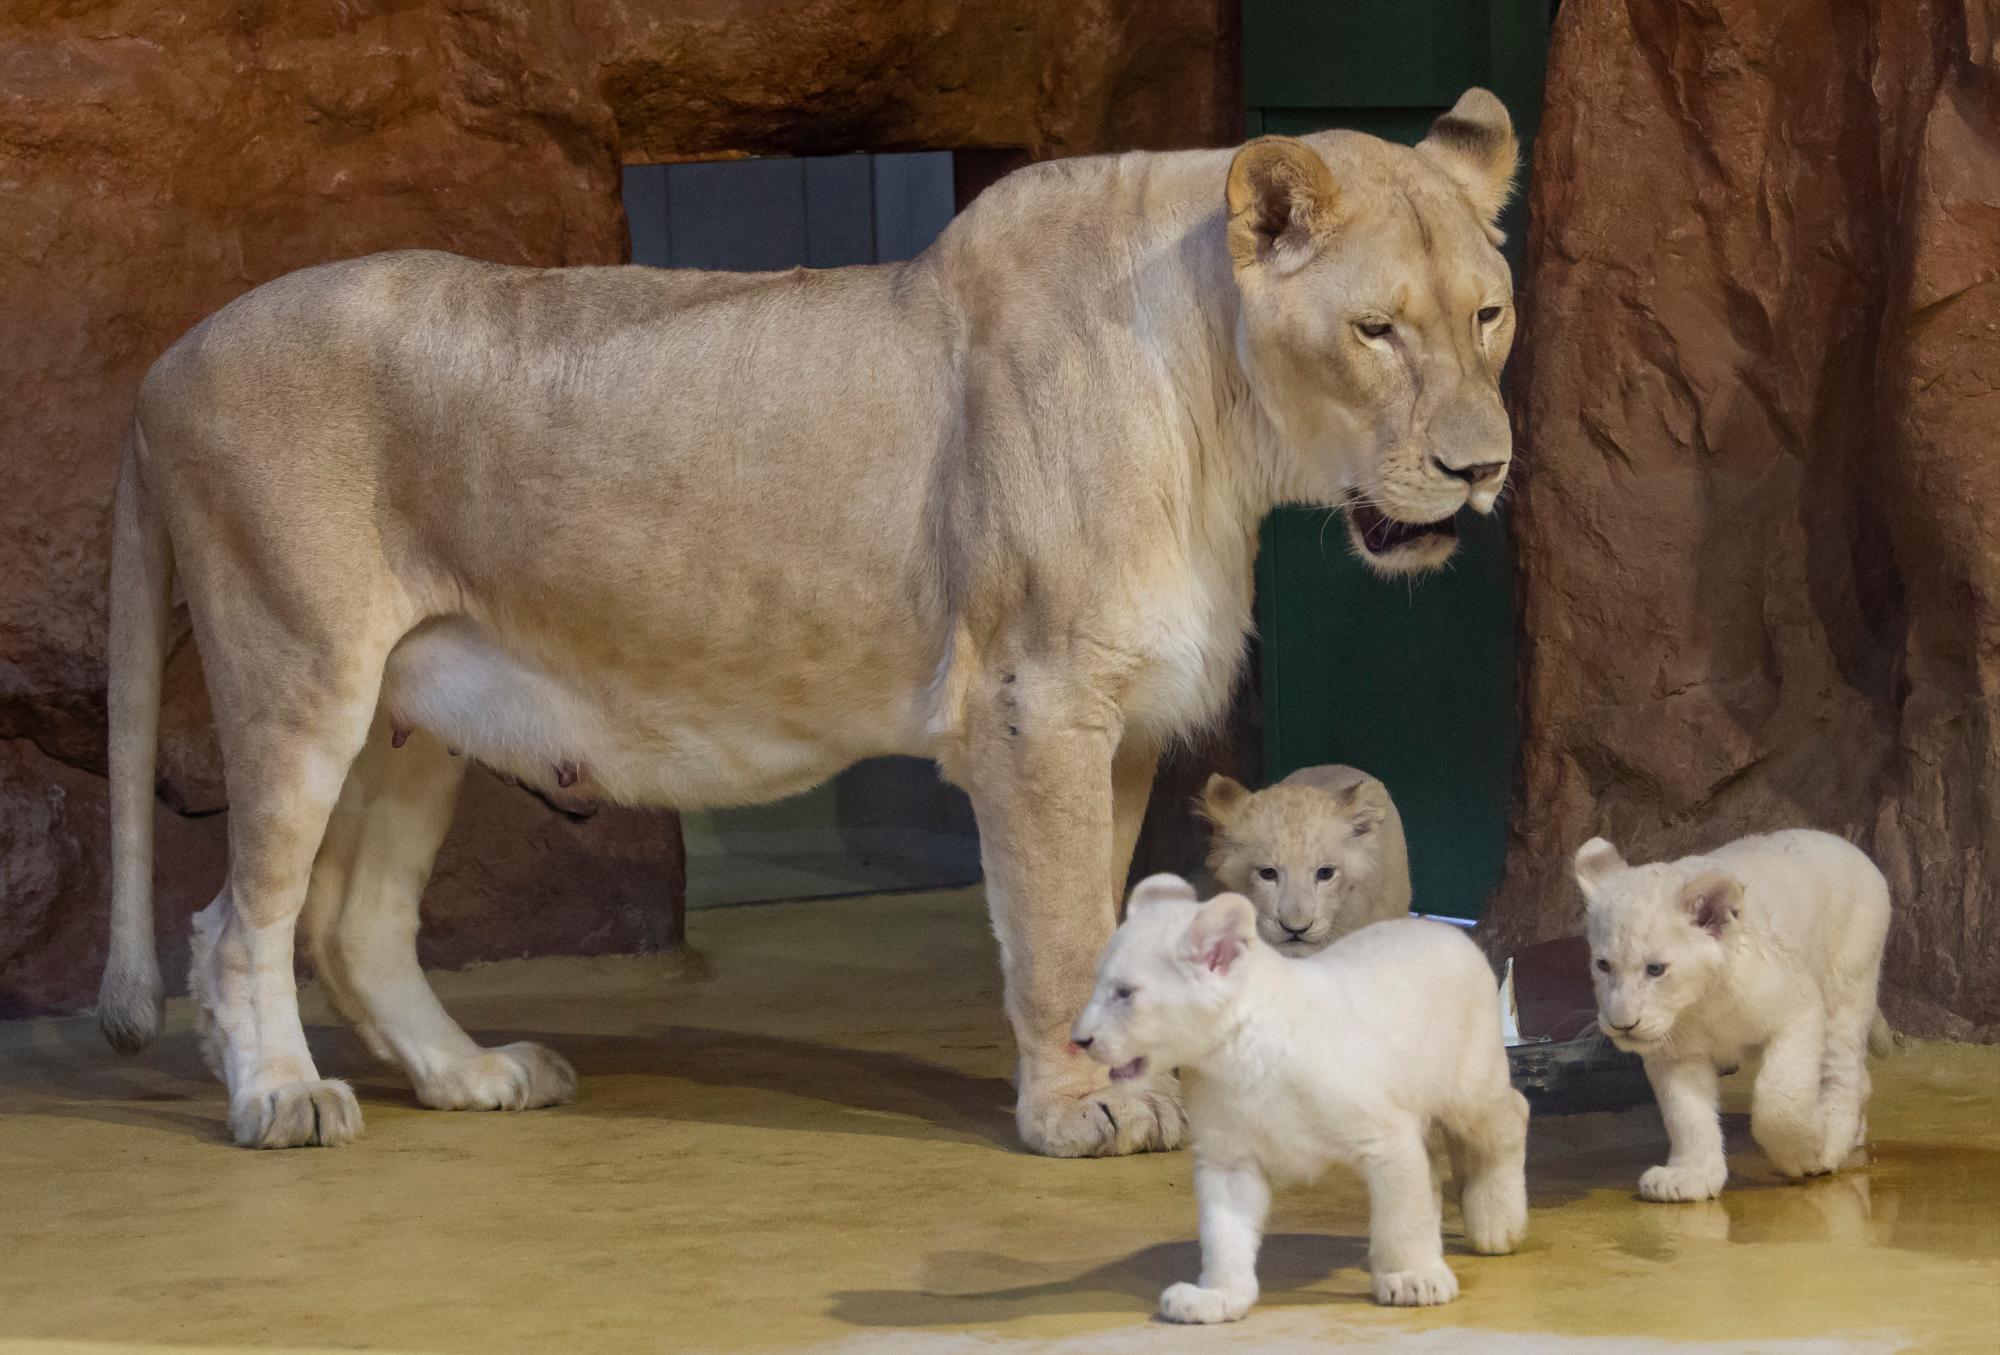 La madre de los leones Kiara se encuentra junto a sus tres cachorros de león blanco, un macho y dos hembras, en su recinto en el zoológico de Magdeburgo, Alemania, el miércoles 15 de enero de 2020. Los leones jóvenes, que son raros en la naturaleza, nacieron el 11 de noviembre de 2019